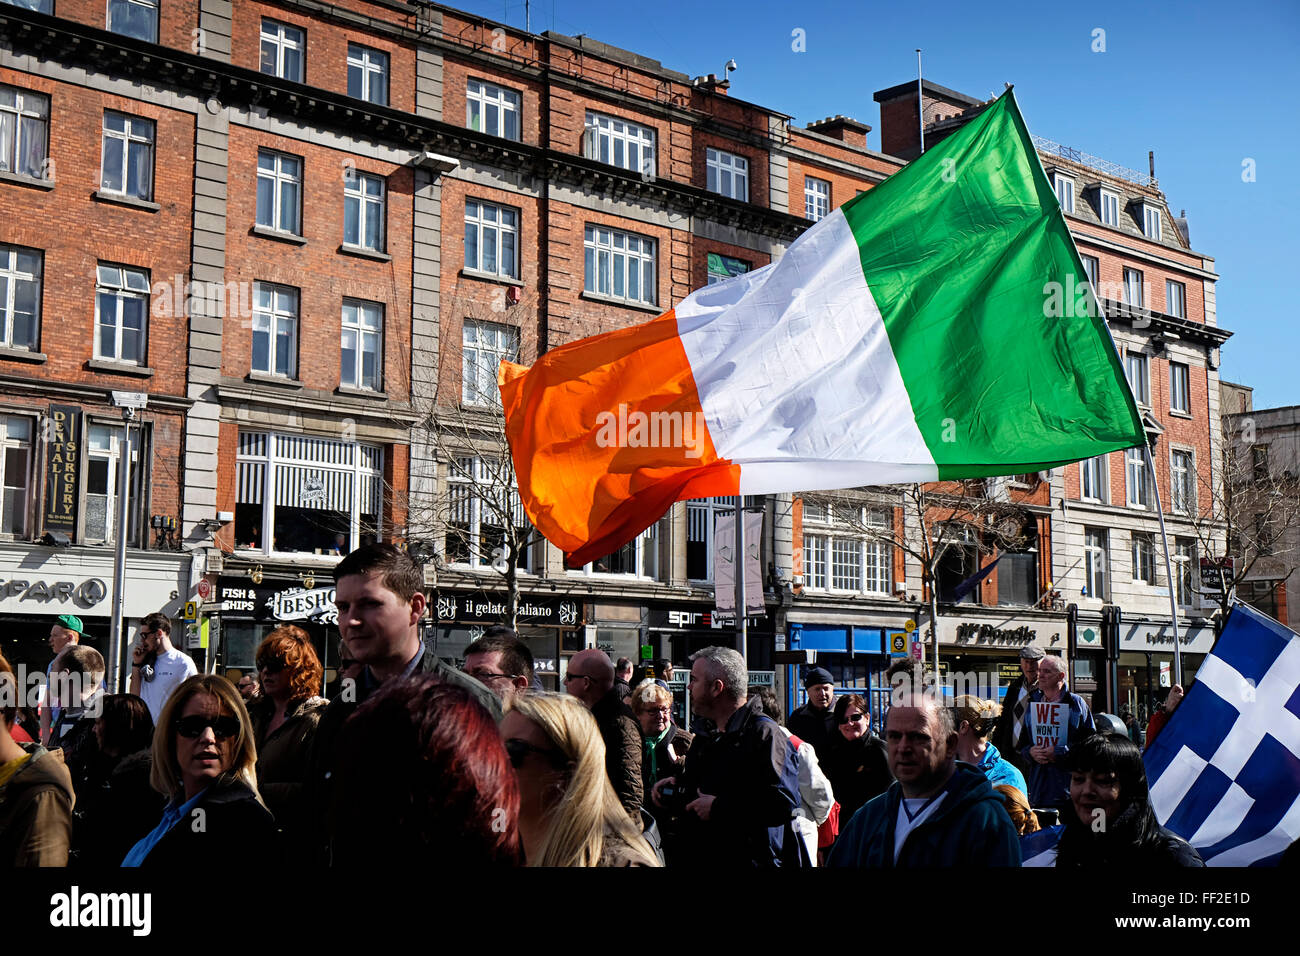 Irlanda bandera irlandesa y griega en agua desfile de protesta de impuestos O'Connell Street Dublin 2015 Foto de stock